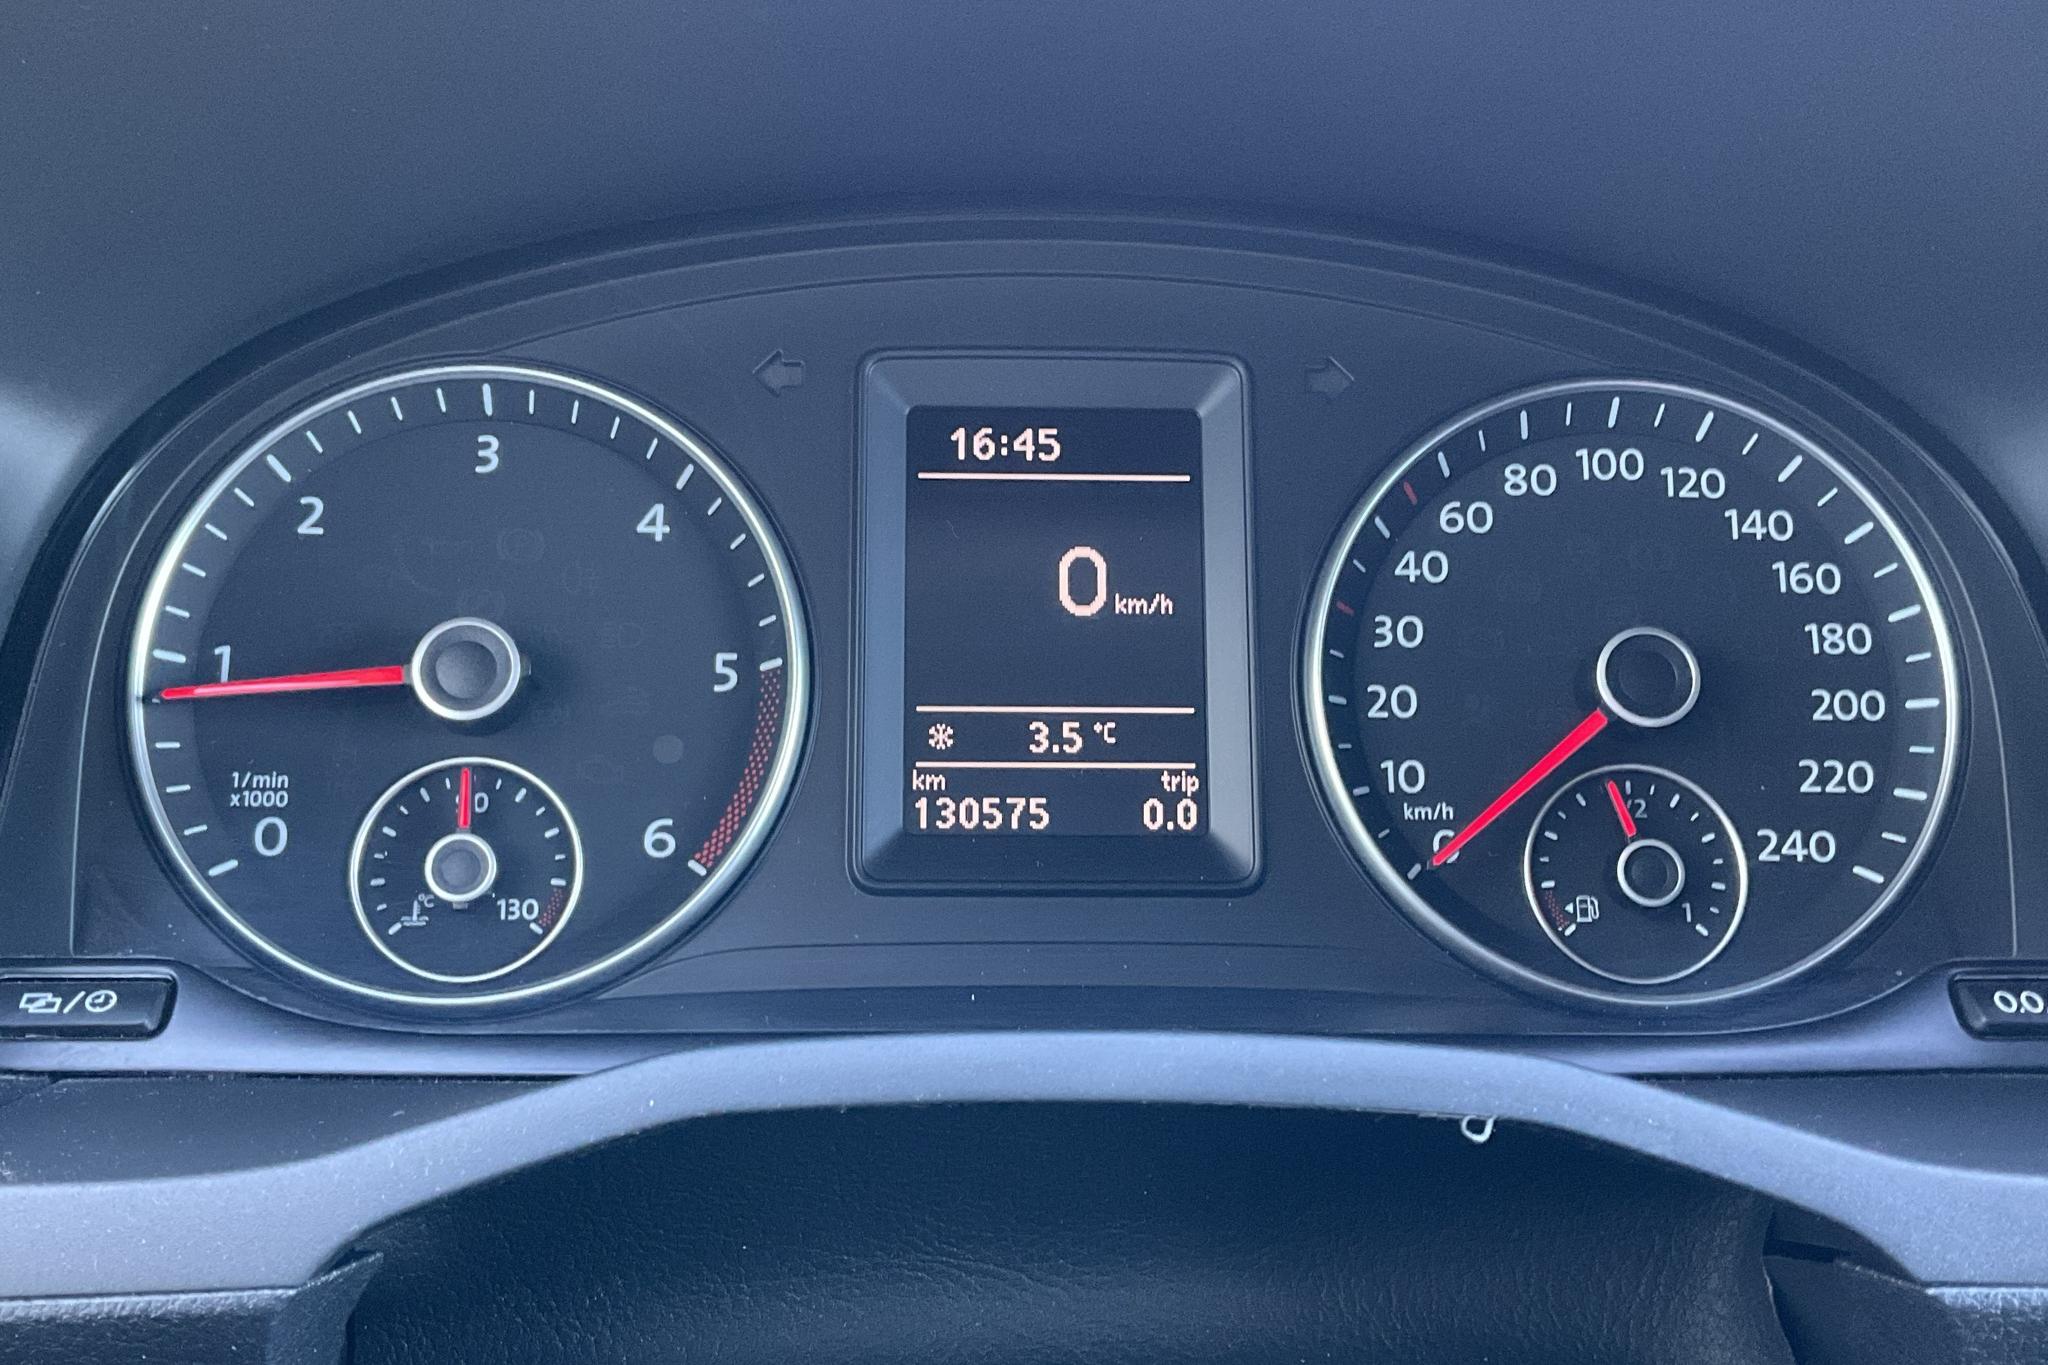 VW Caddy Maxi 2.0 TDI 4MOTION (122hk) - 13 057 mil - Manuell - vit - 2019